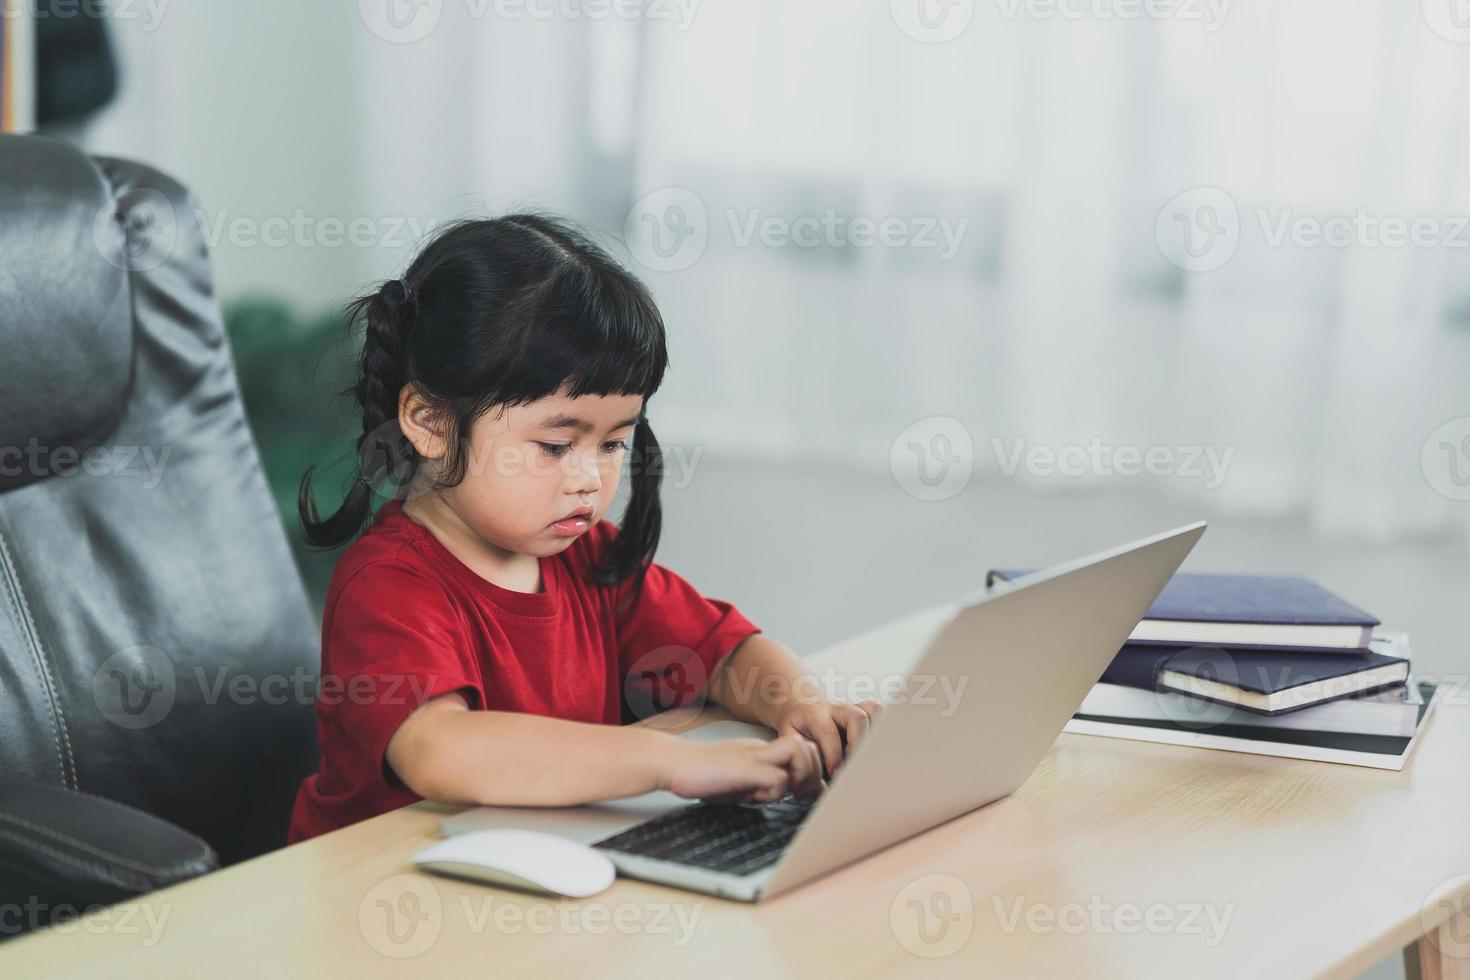 una niña asiática que usa una camiseta roja usa una computadora portátil y estudia en línea en un escritorio de madera en la sala de estar en casa. educación aprendiendo en línea desde el concepto de hogar. foto